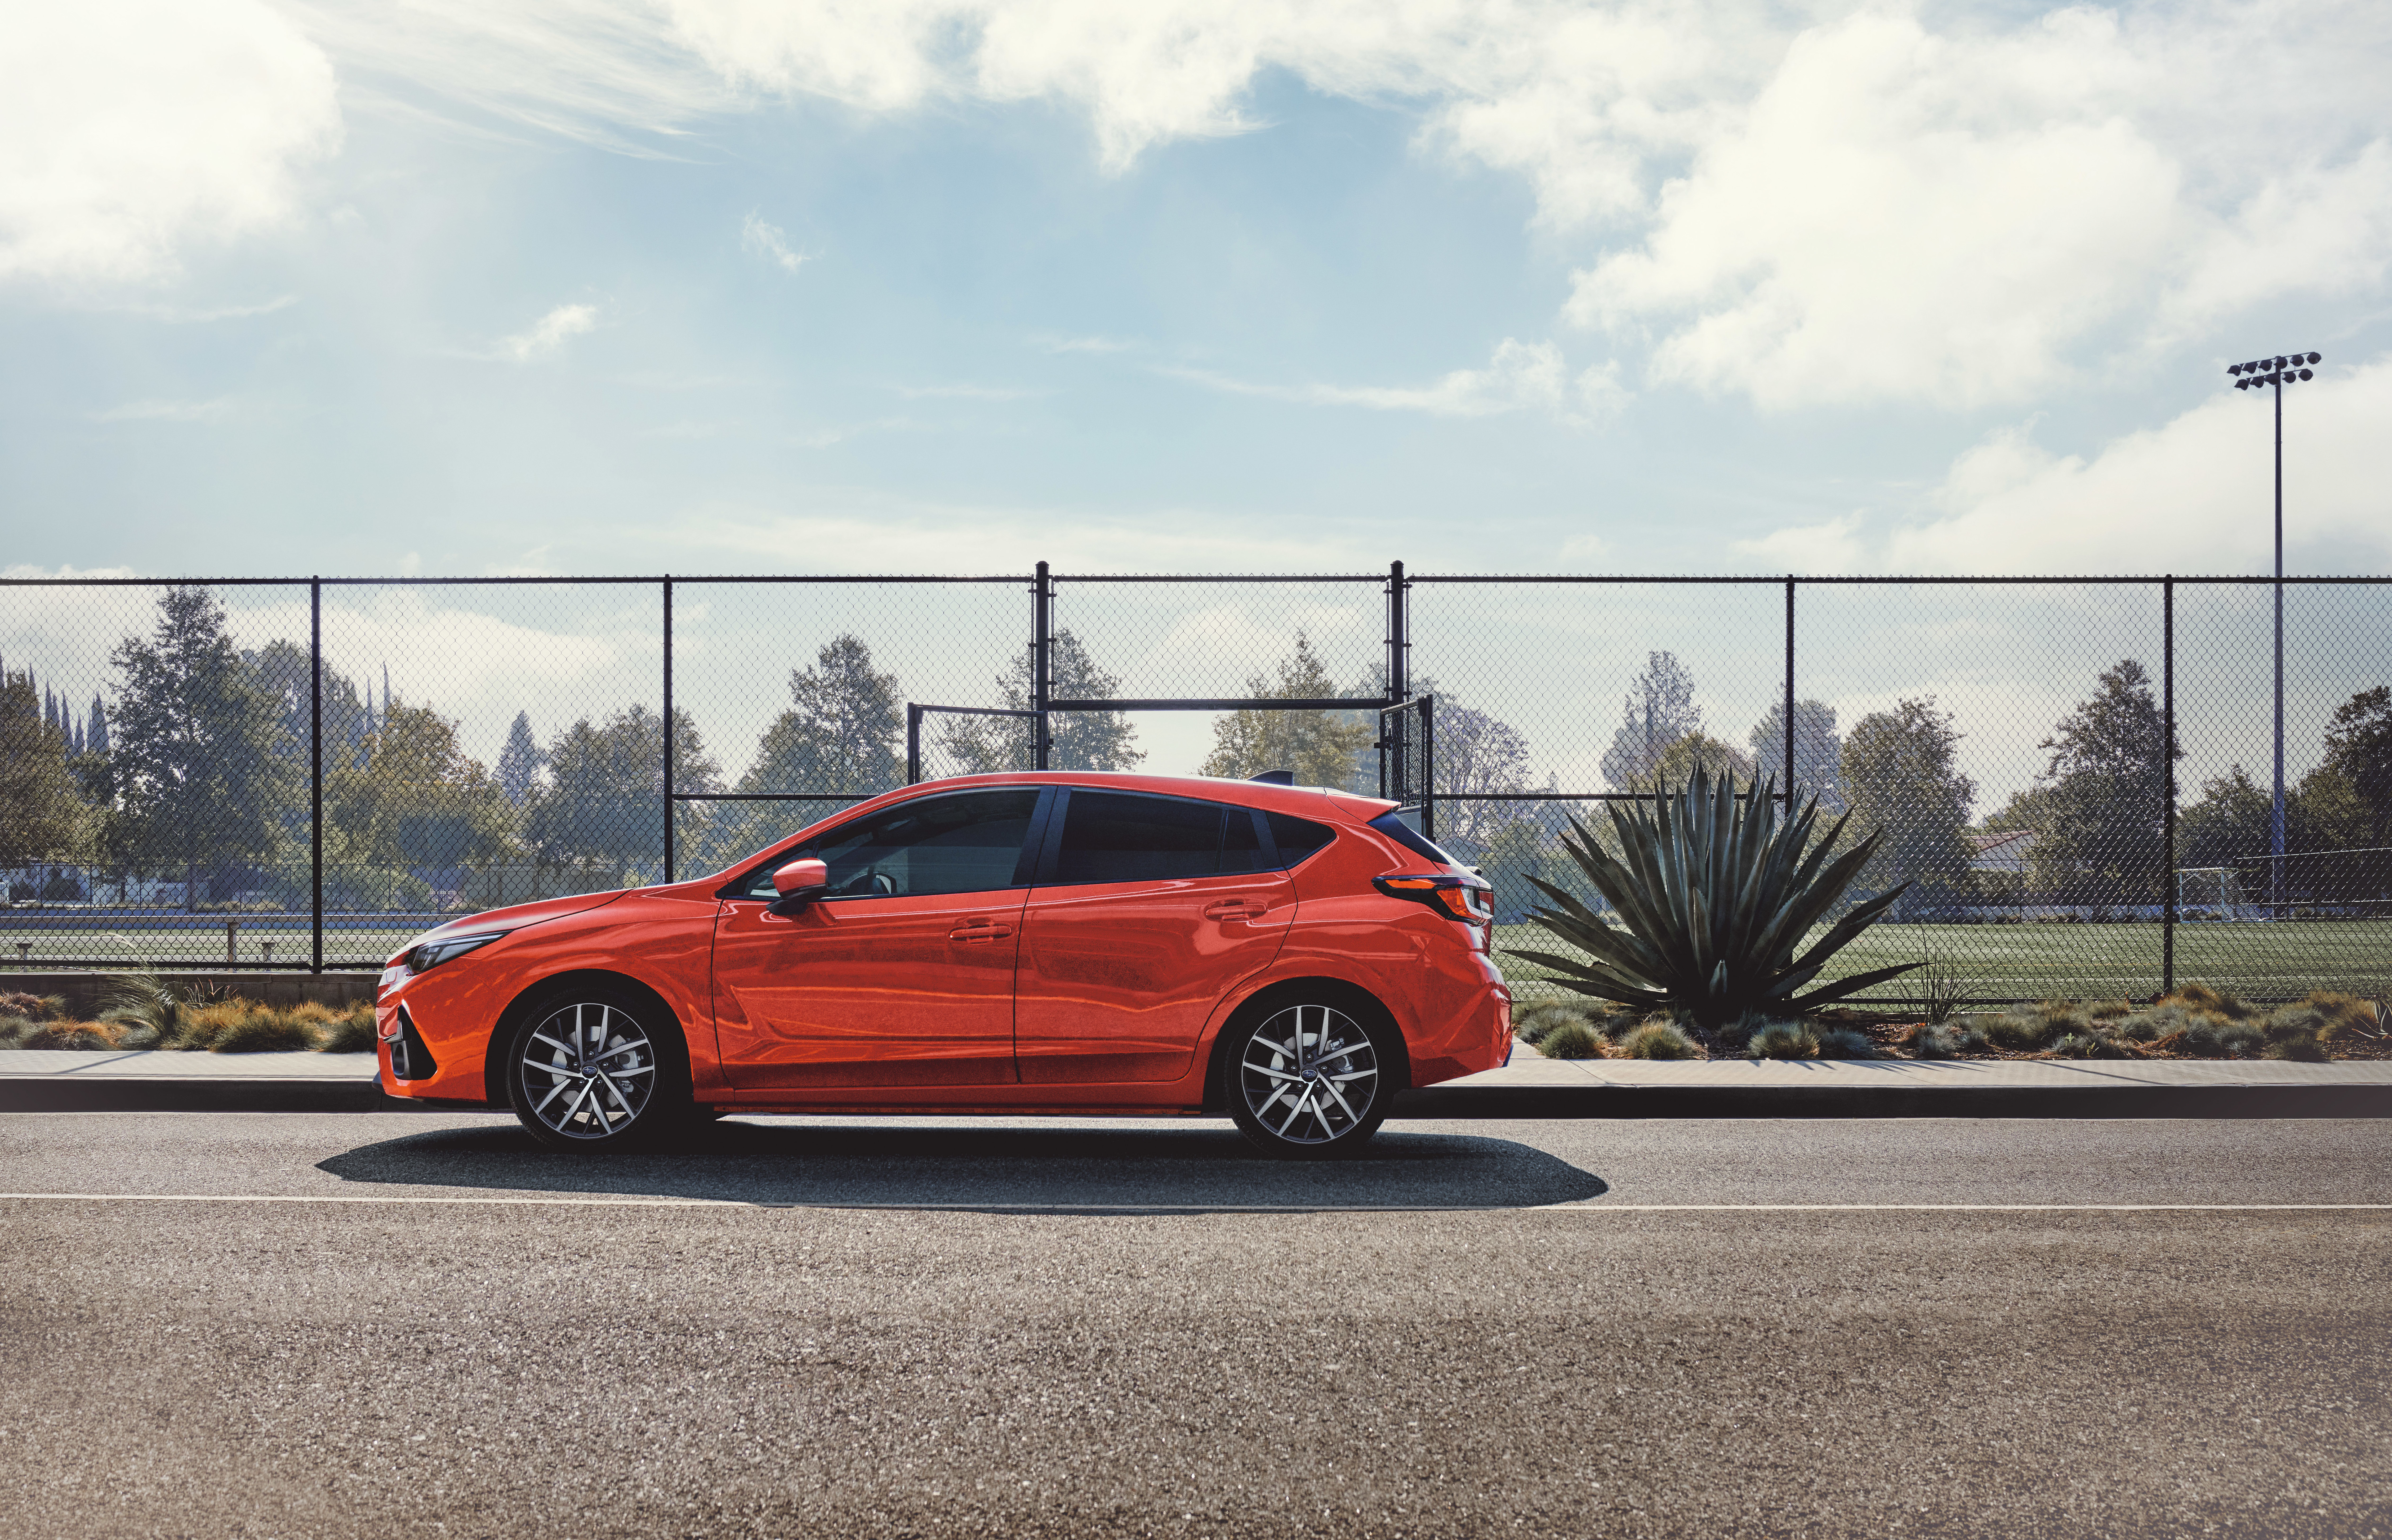 All Wheel Drive small hatch versatility: Pre-orders open for the all-new Subaru Impreza